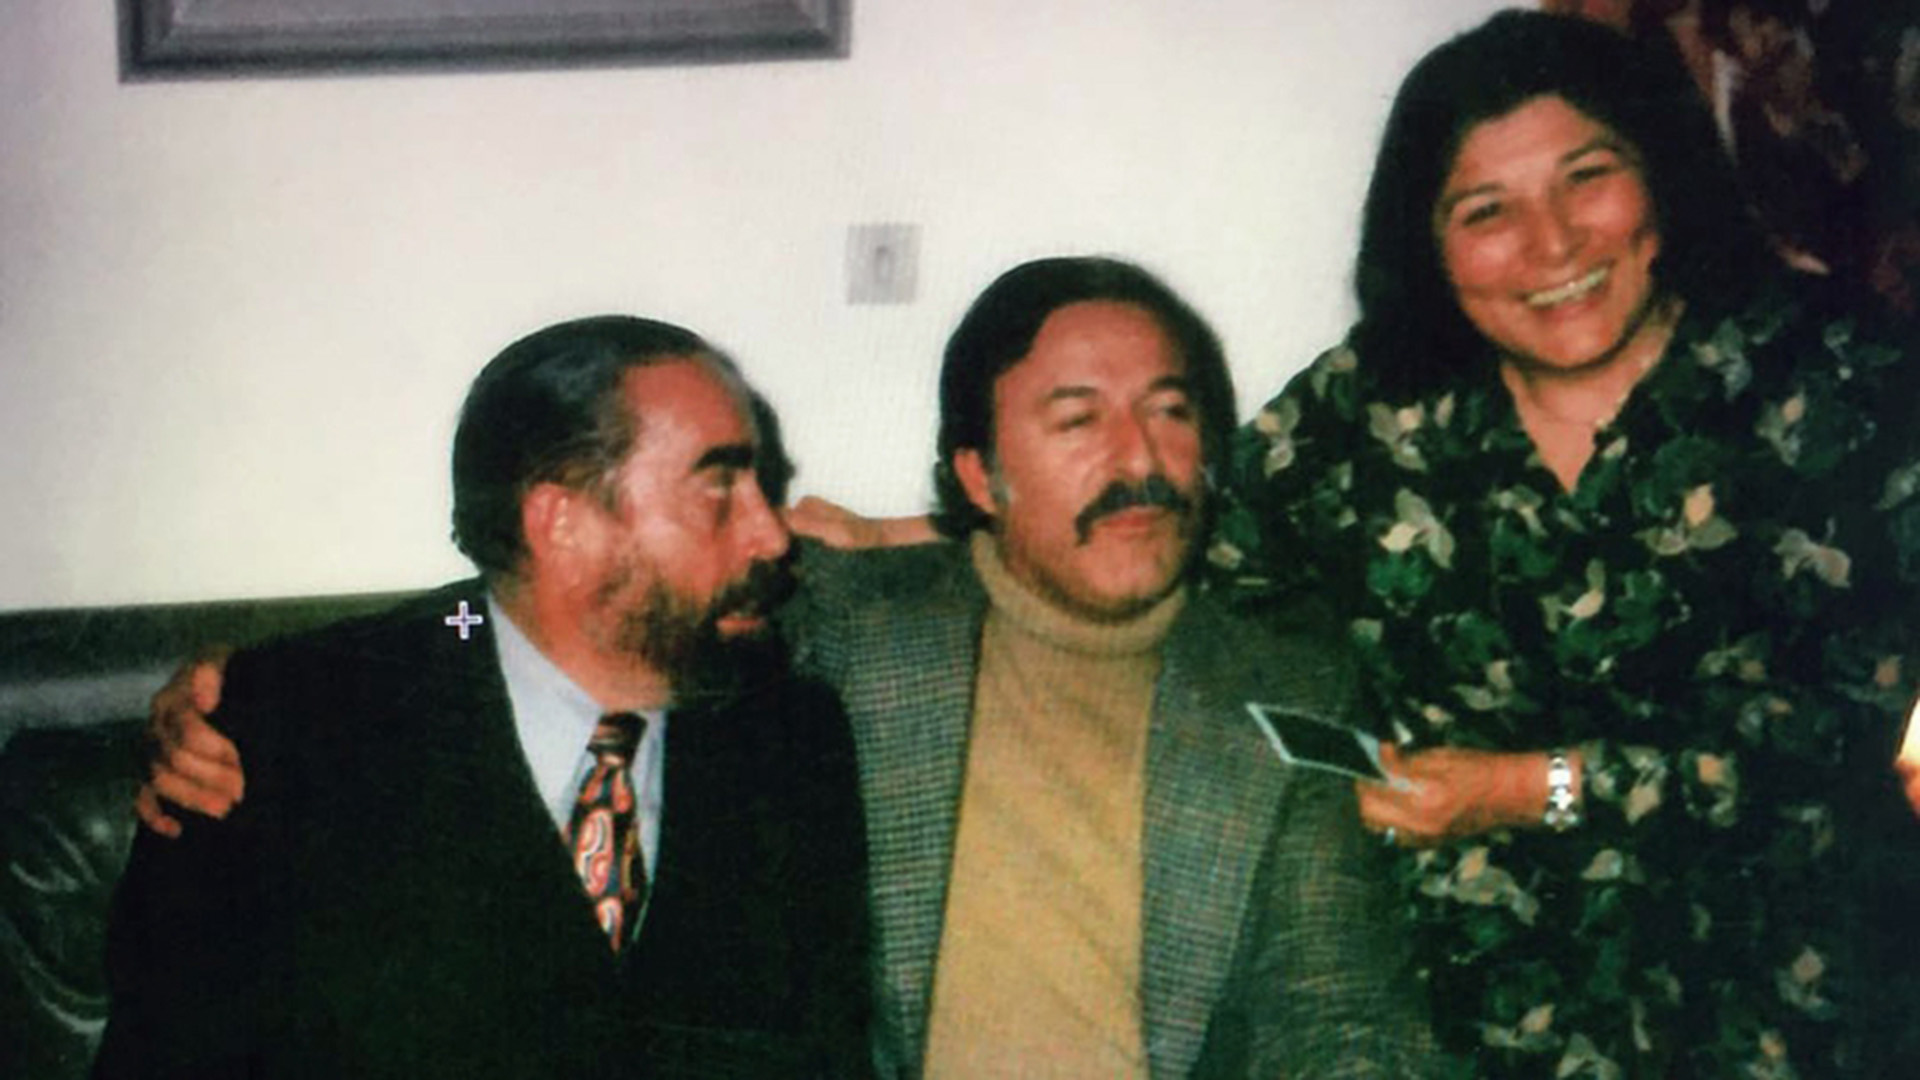 Cuchi Leguizamón, Cesar Isella y Mercedes Sosa, protagonistas centrales de la revolución estética e ideológica que representó el "Nueva Cancionero" para el folclore argentino, a partir de los años 60